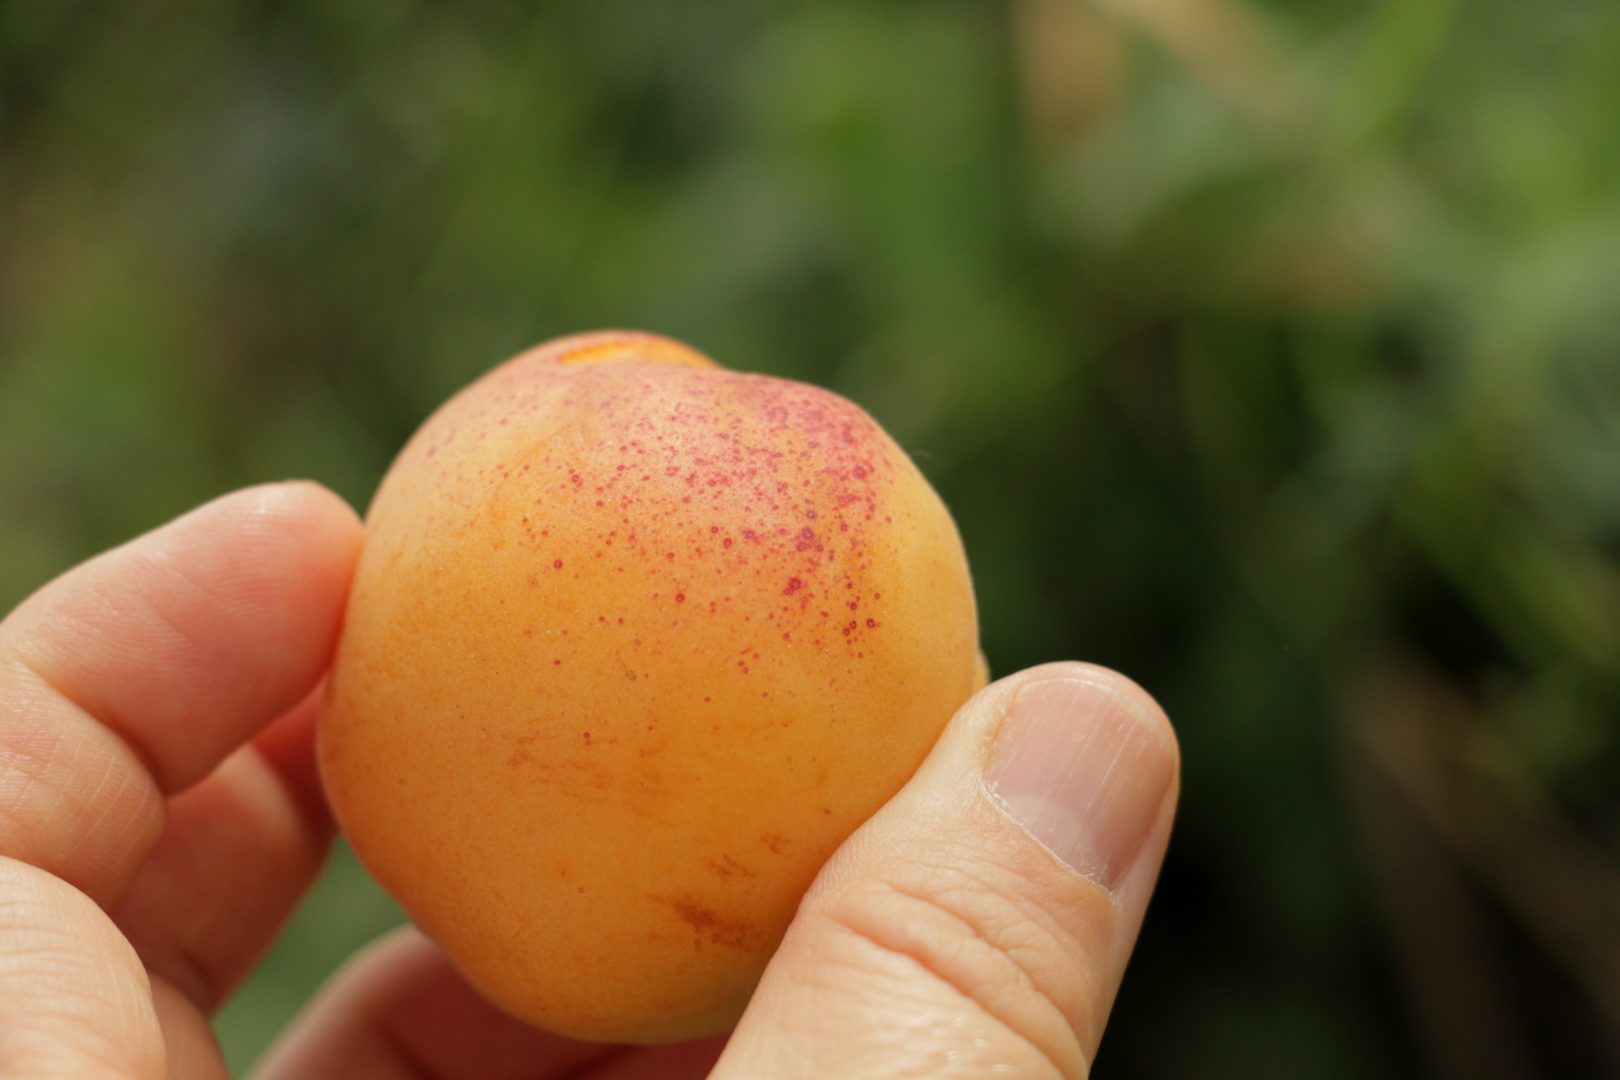 Короста на плодах абрикоса - признак поражения клястероспориозом, или дырчатой пятнистостью